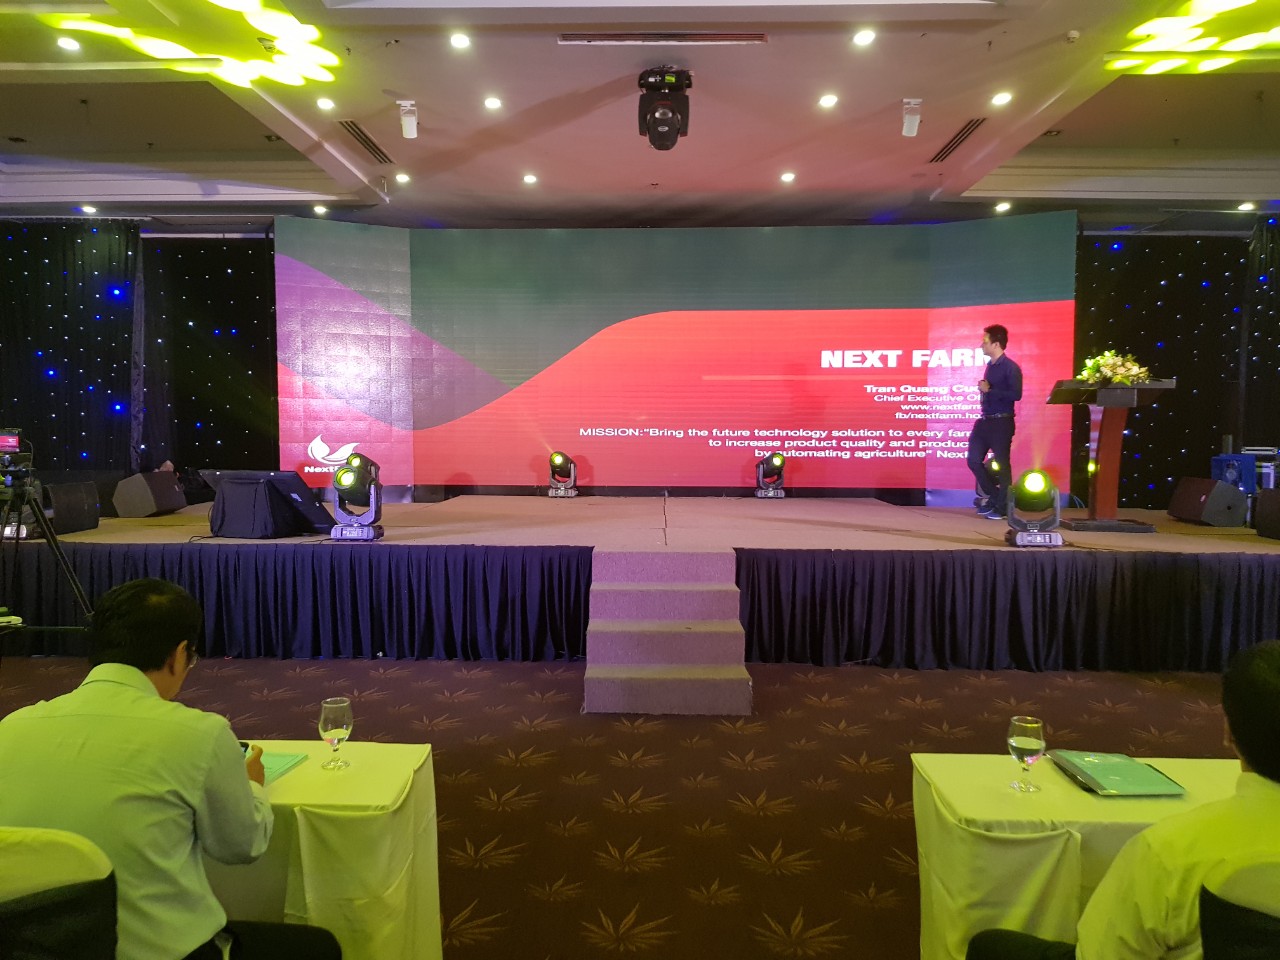 CEO Nông nghiệp thông minh Nextfarm ông Trần Quang Cường giới thiệu về Nextfarm tại hội nghị